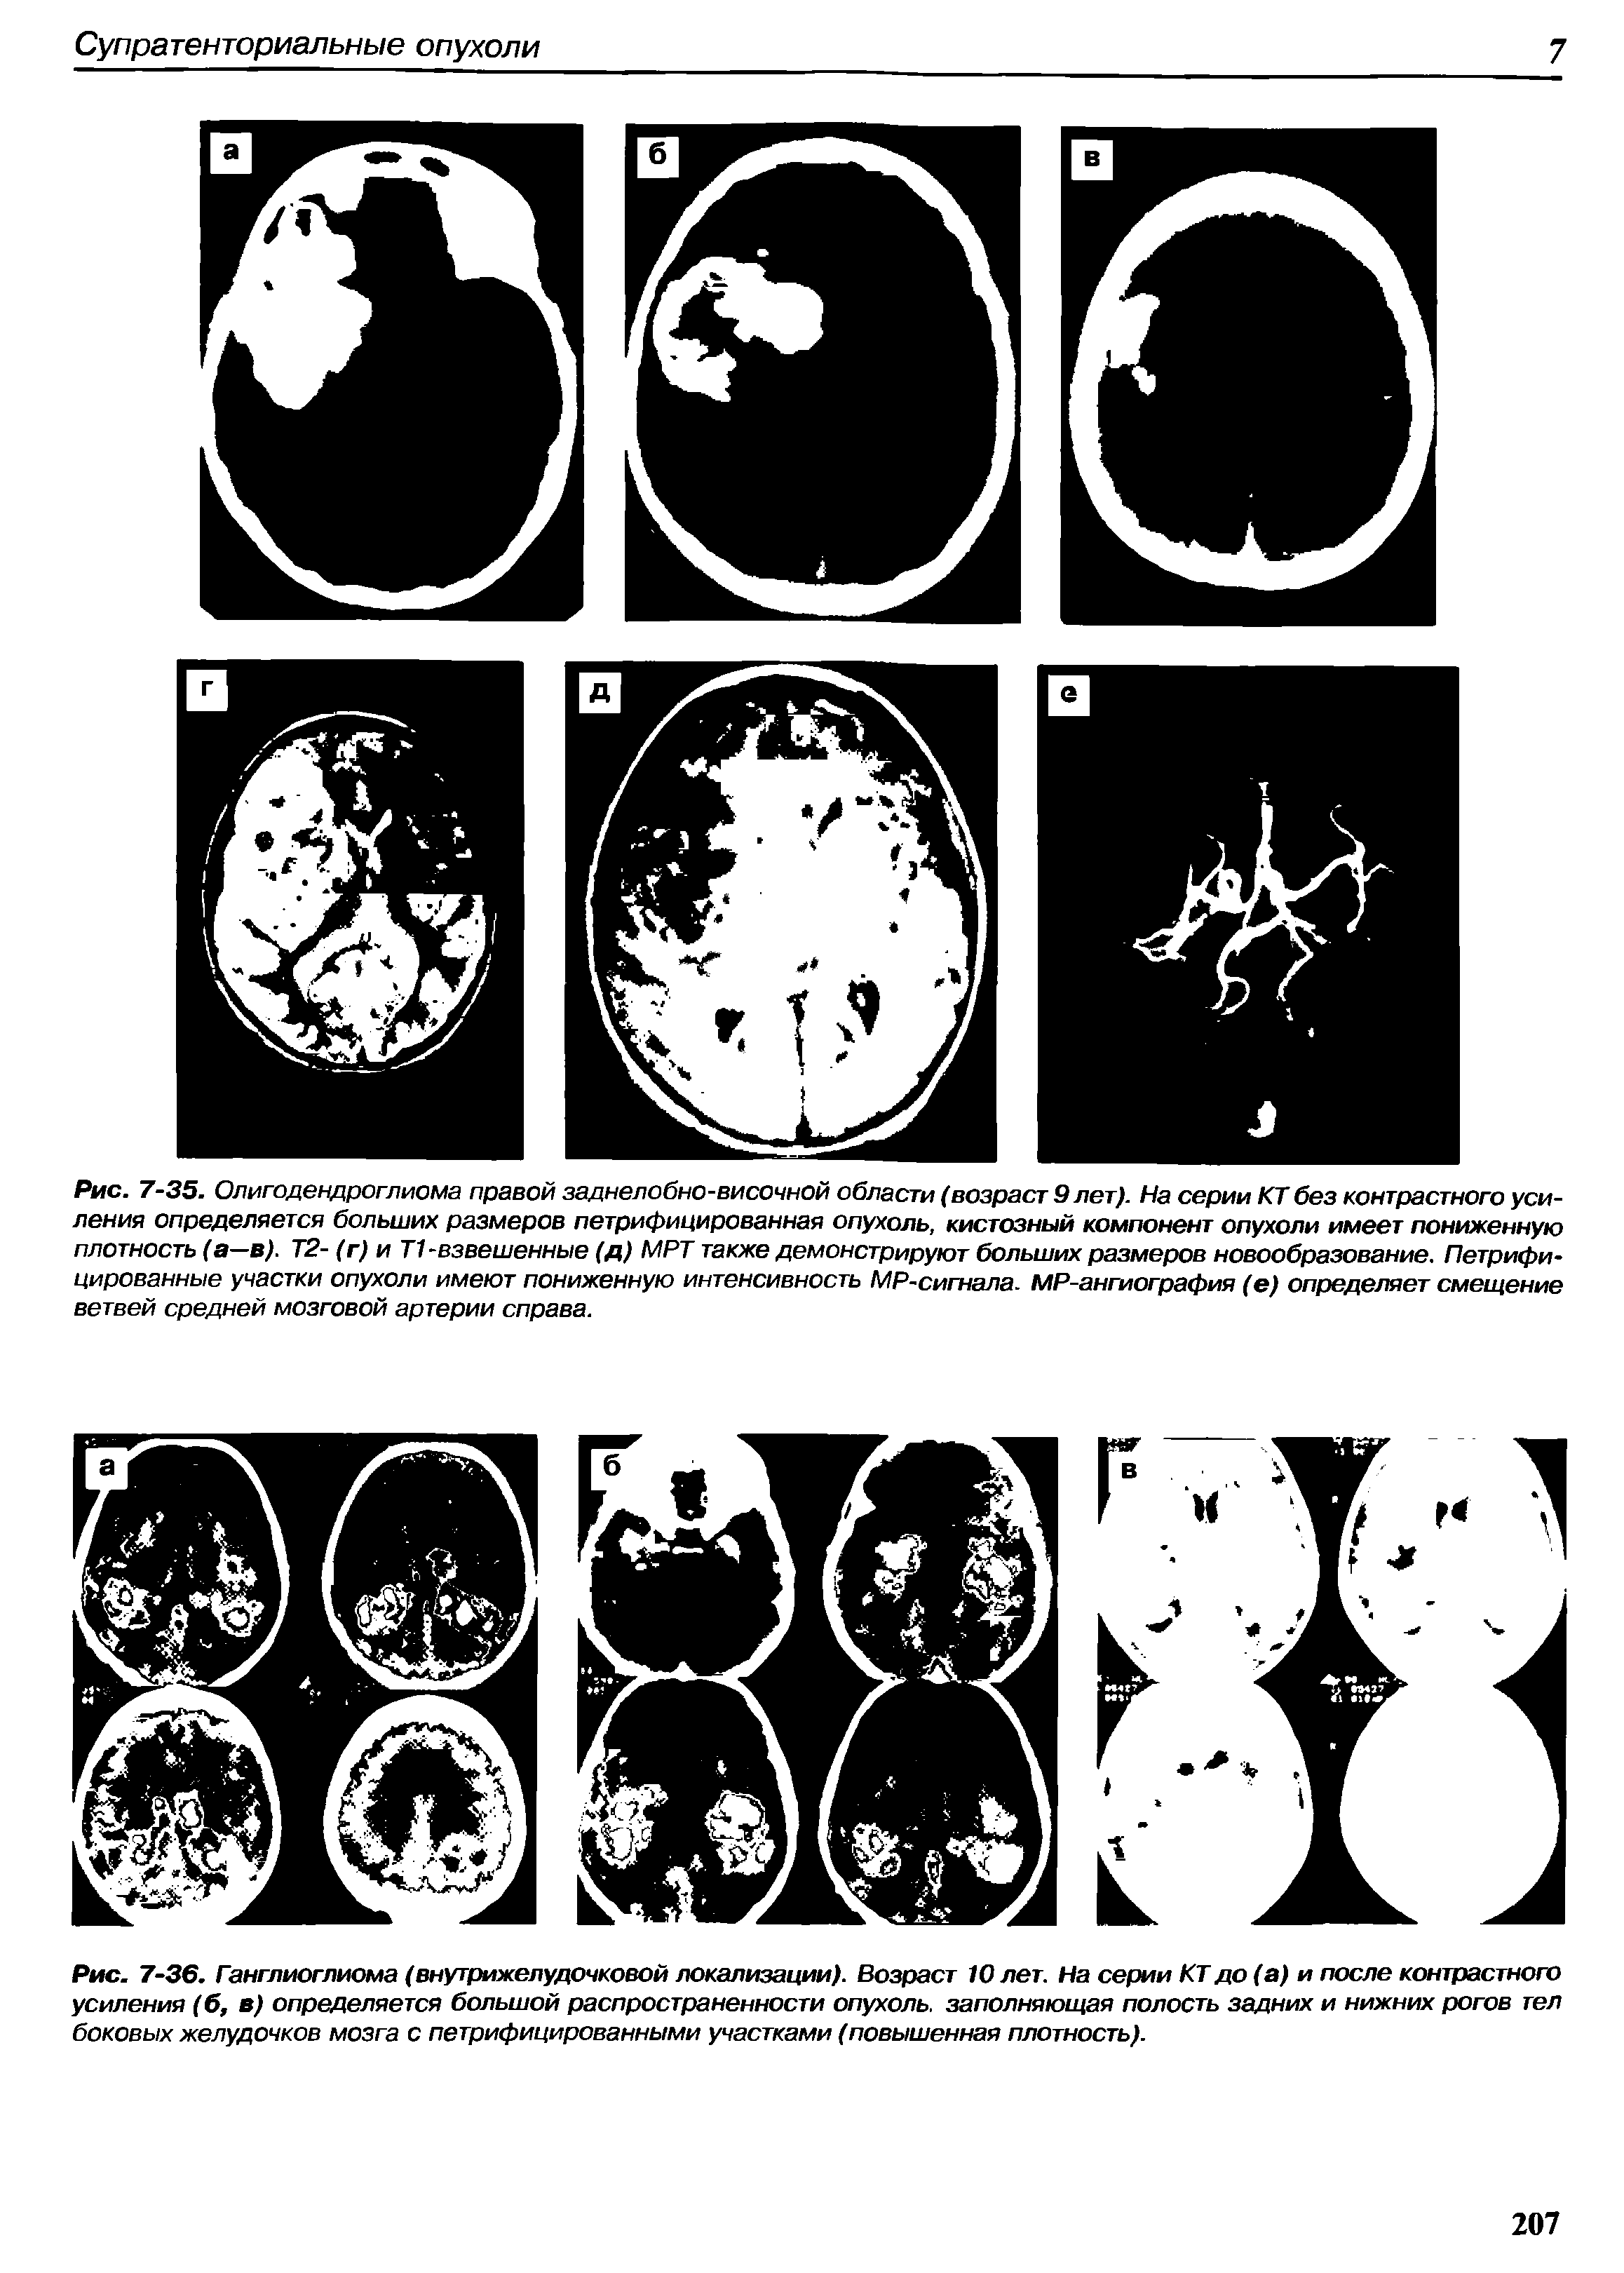 Рис. 7-36. Ганглиоглиома (внутрижелудочковой локализации). Возраст 10 лет. На серии КТ до (а) и после контрастного усиления (6, в) определяется большой распространенности опухоль, заполняющая полость задних и нижних рогов тел боковых желудочков мозга с петрифицированными участками (повышенная плотность).